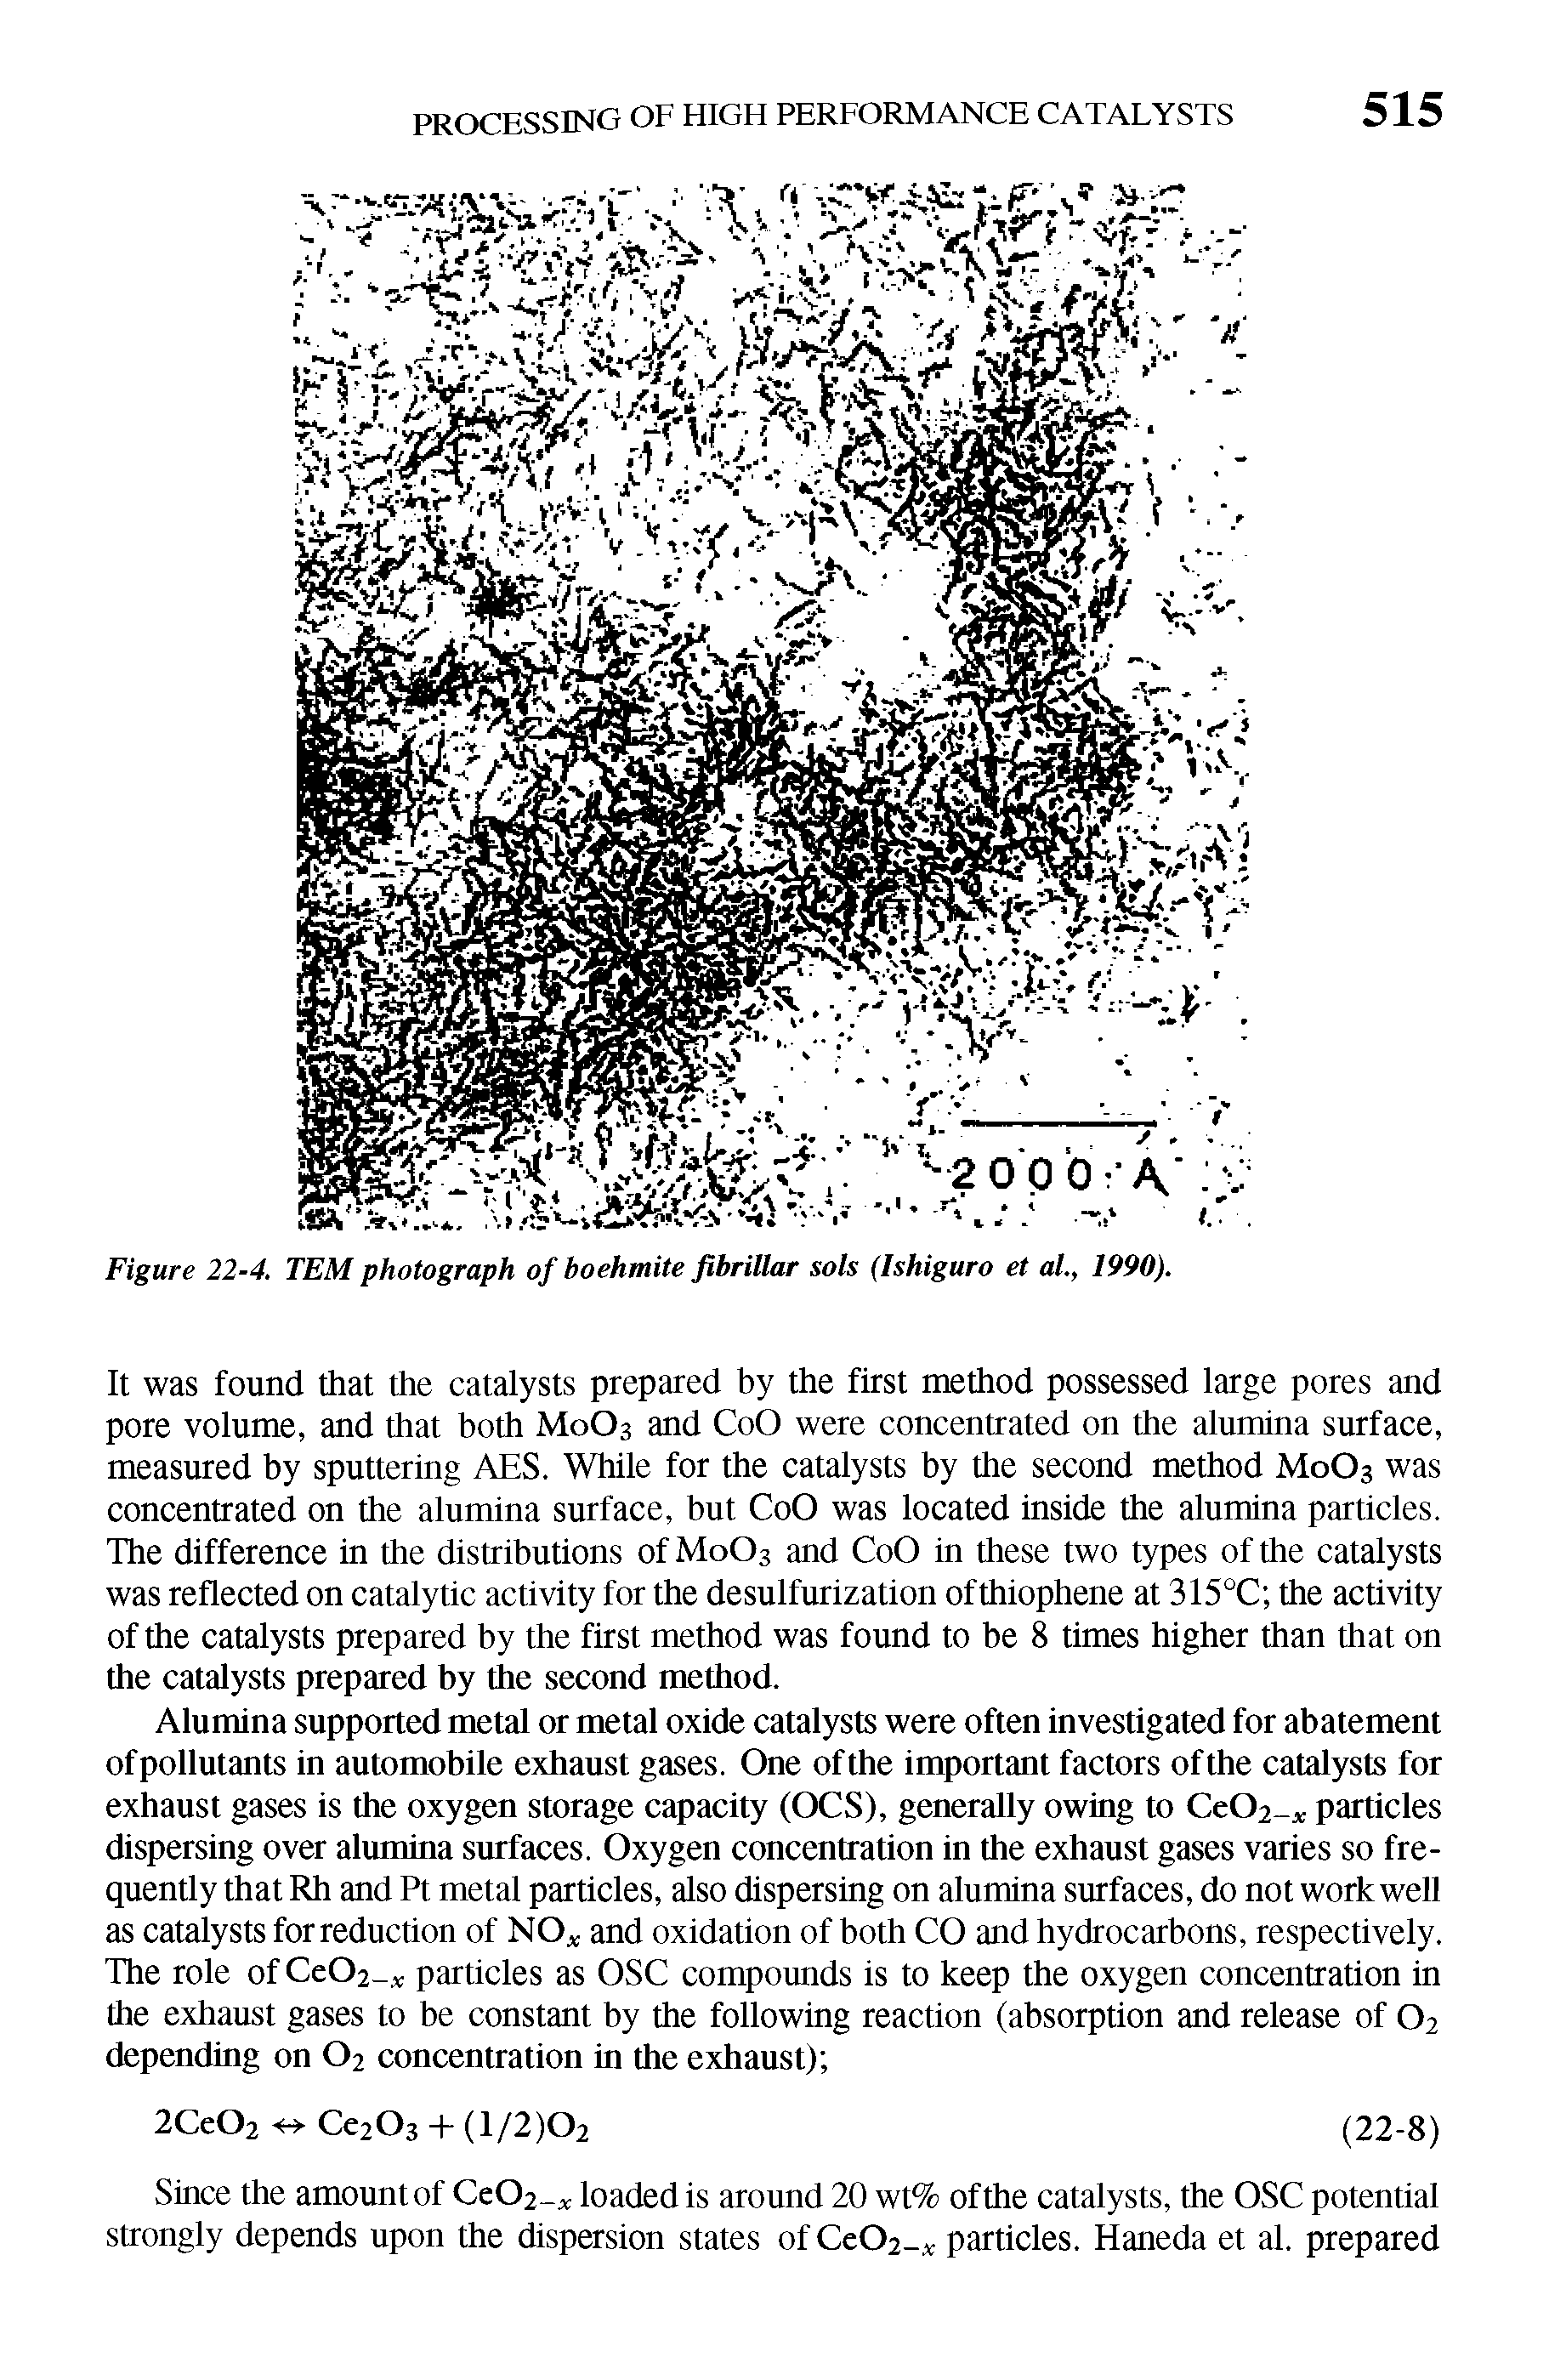 Figure 22-4. TEM photograph of boehmite fibrillar sols (Ishiguro et al., 1990).